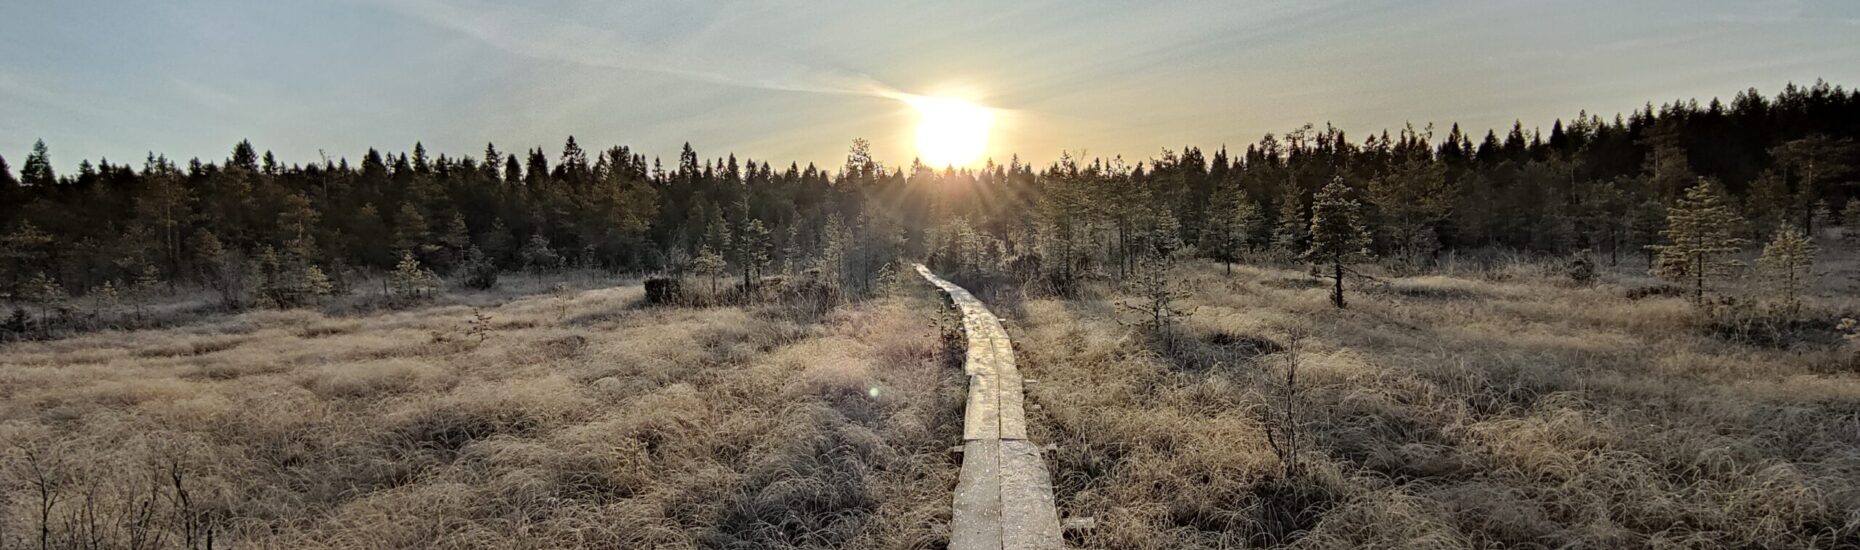 Huurteista suomaisemaa, keskellä pitkospuut kohti matalalta paistavaa aurinkoa.